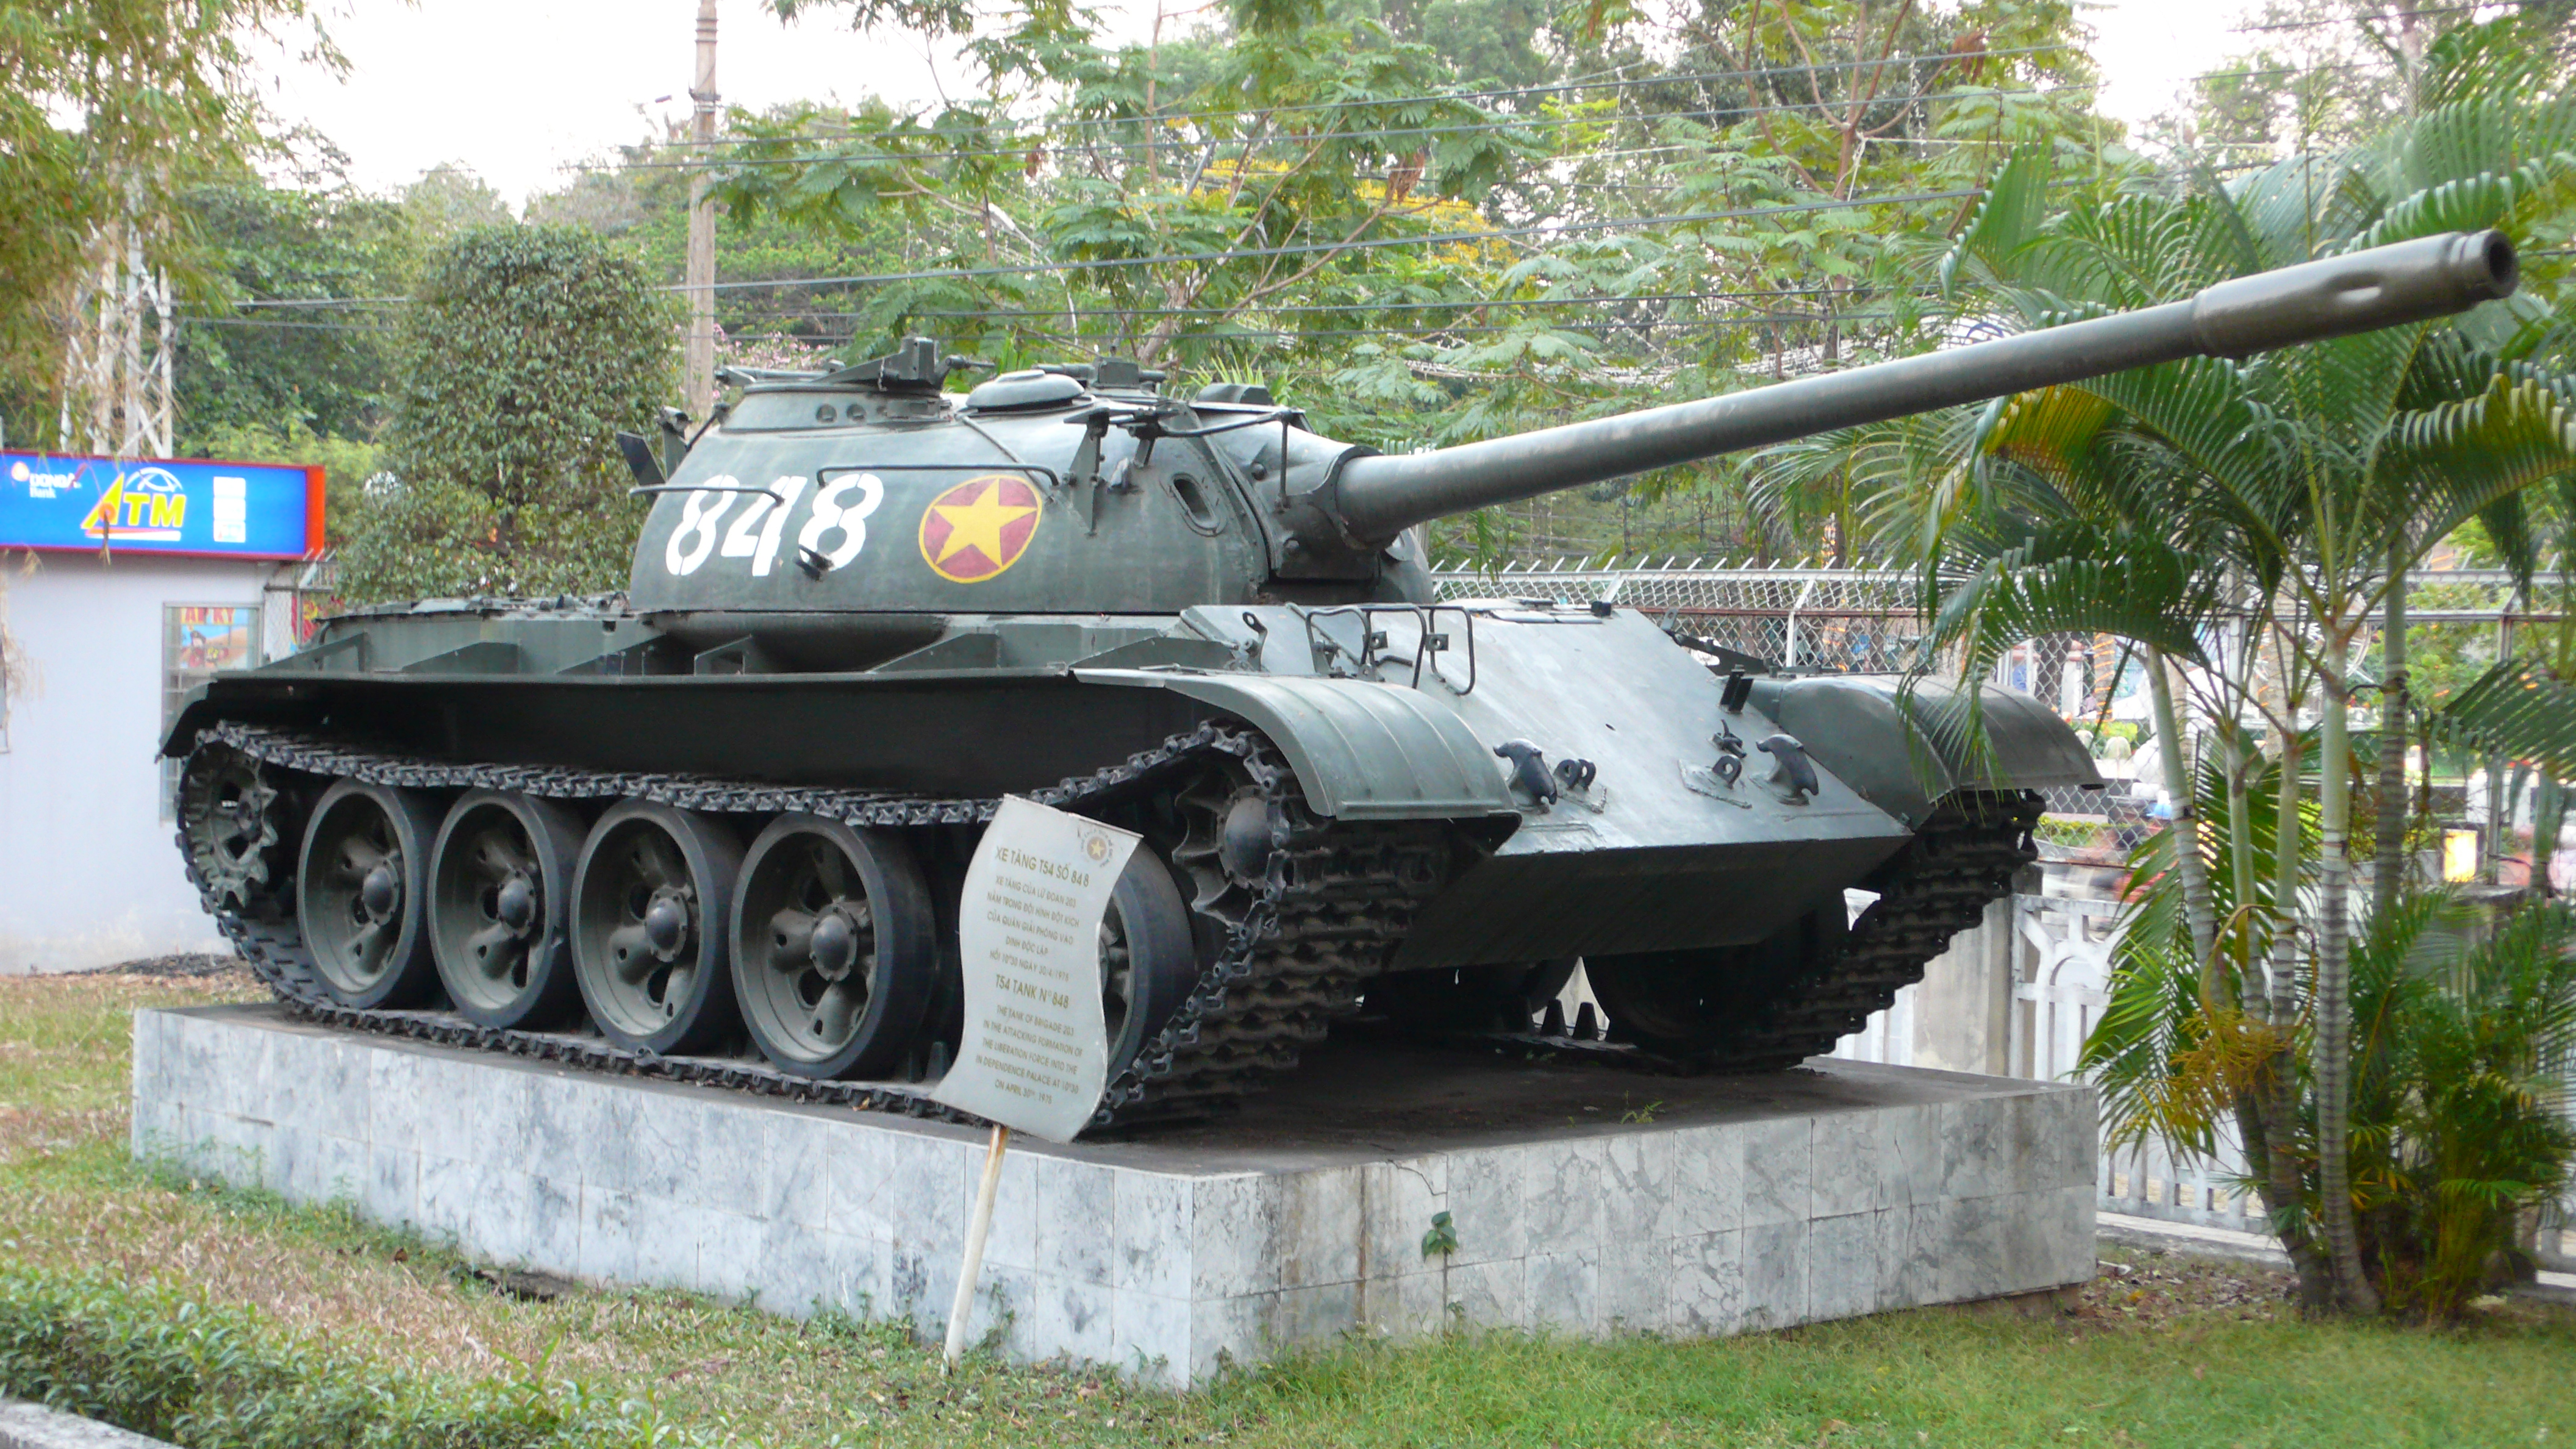 T-54A: Chiếc xe tăng T-54A nổi tiếng là biểu tượng của khối phía Đông trong thời Chiến tranh Lạnh. Hình ảnh của chiếc xe tăng này sẽ khiến bạn thấy được sự uy lực và thánh chiến trong những trận đánh.